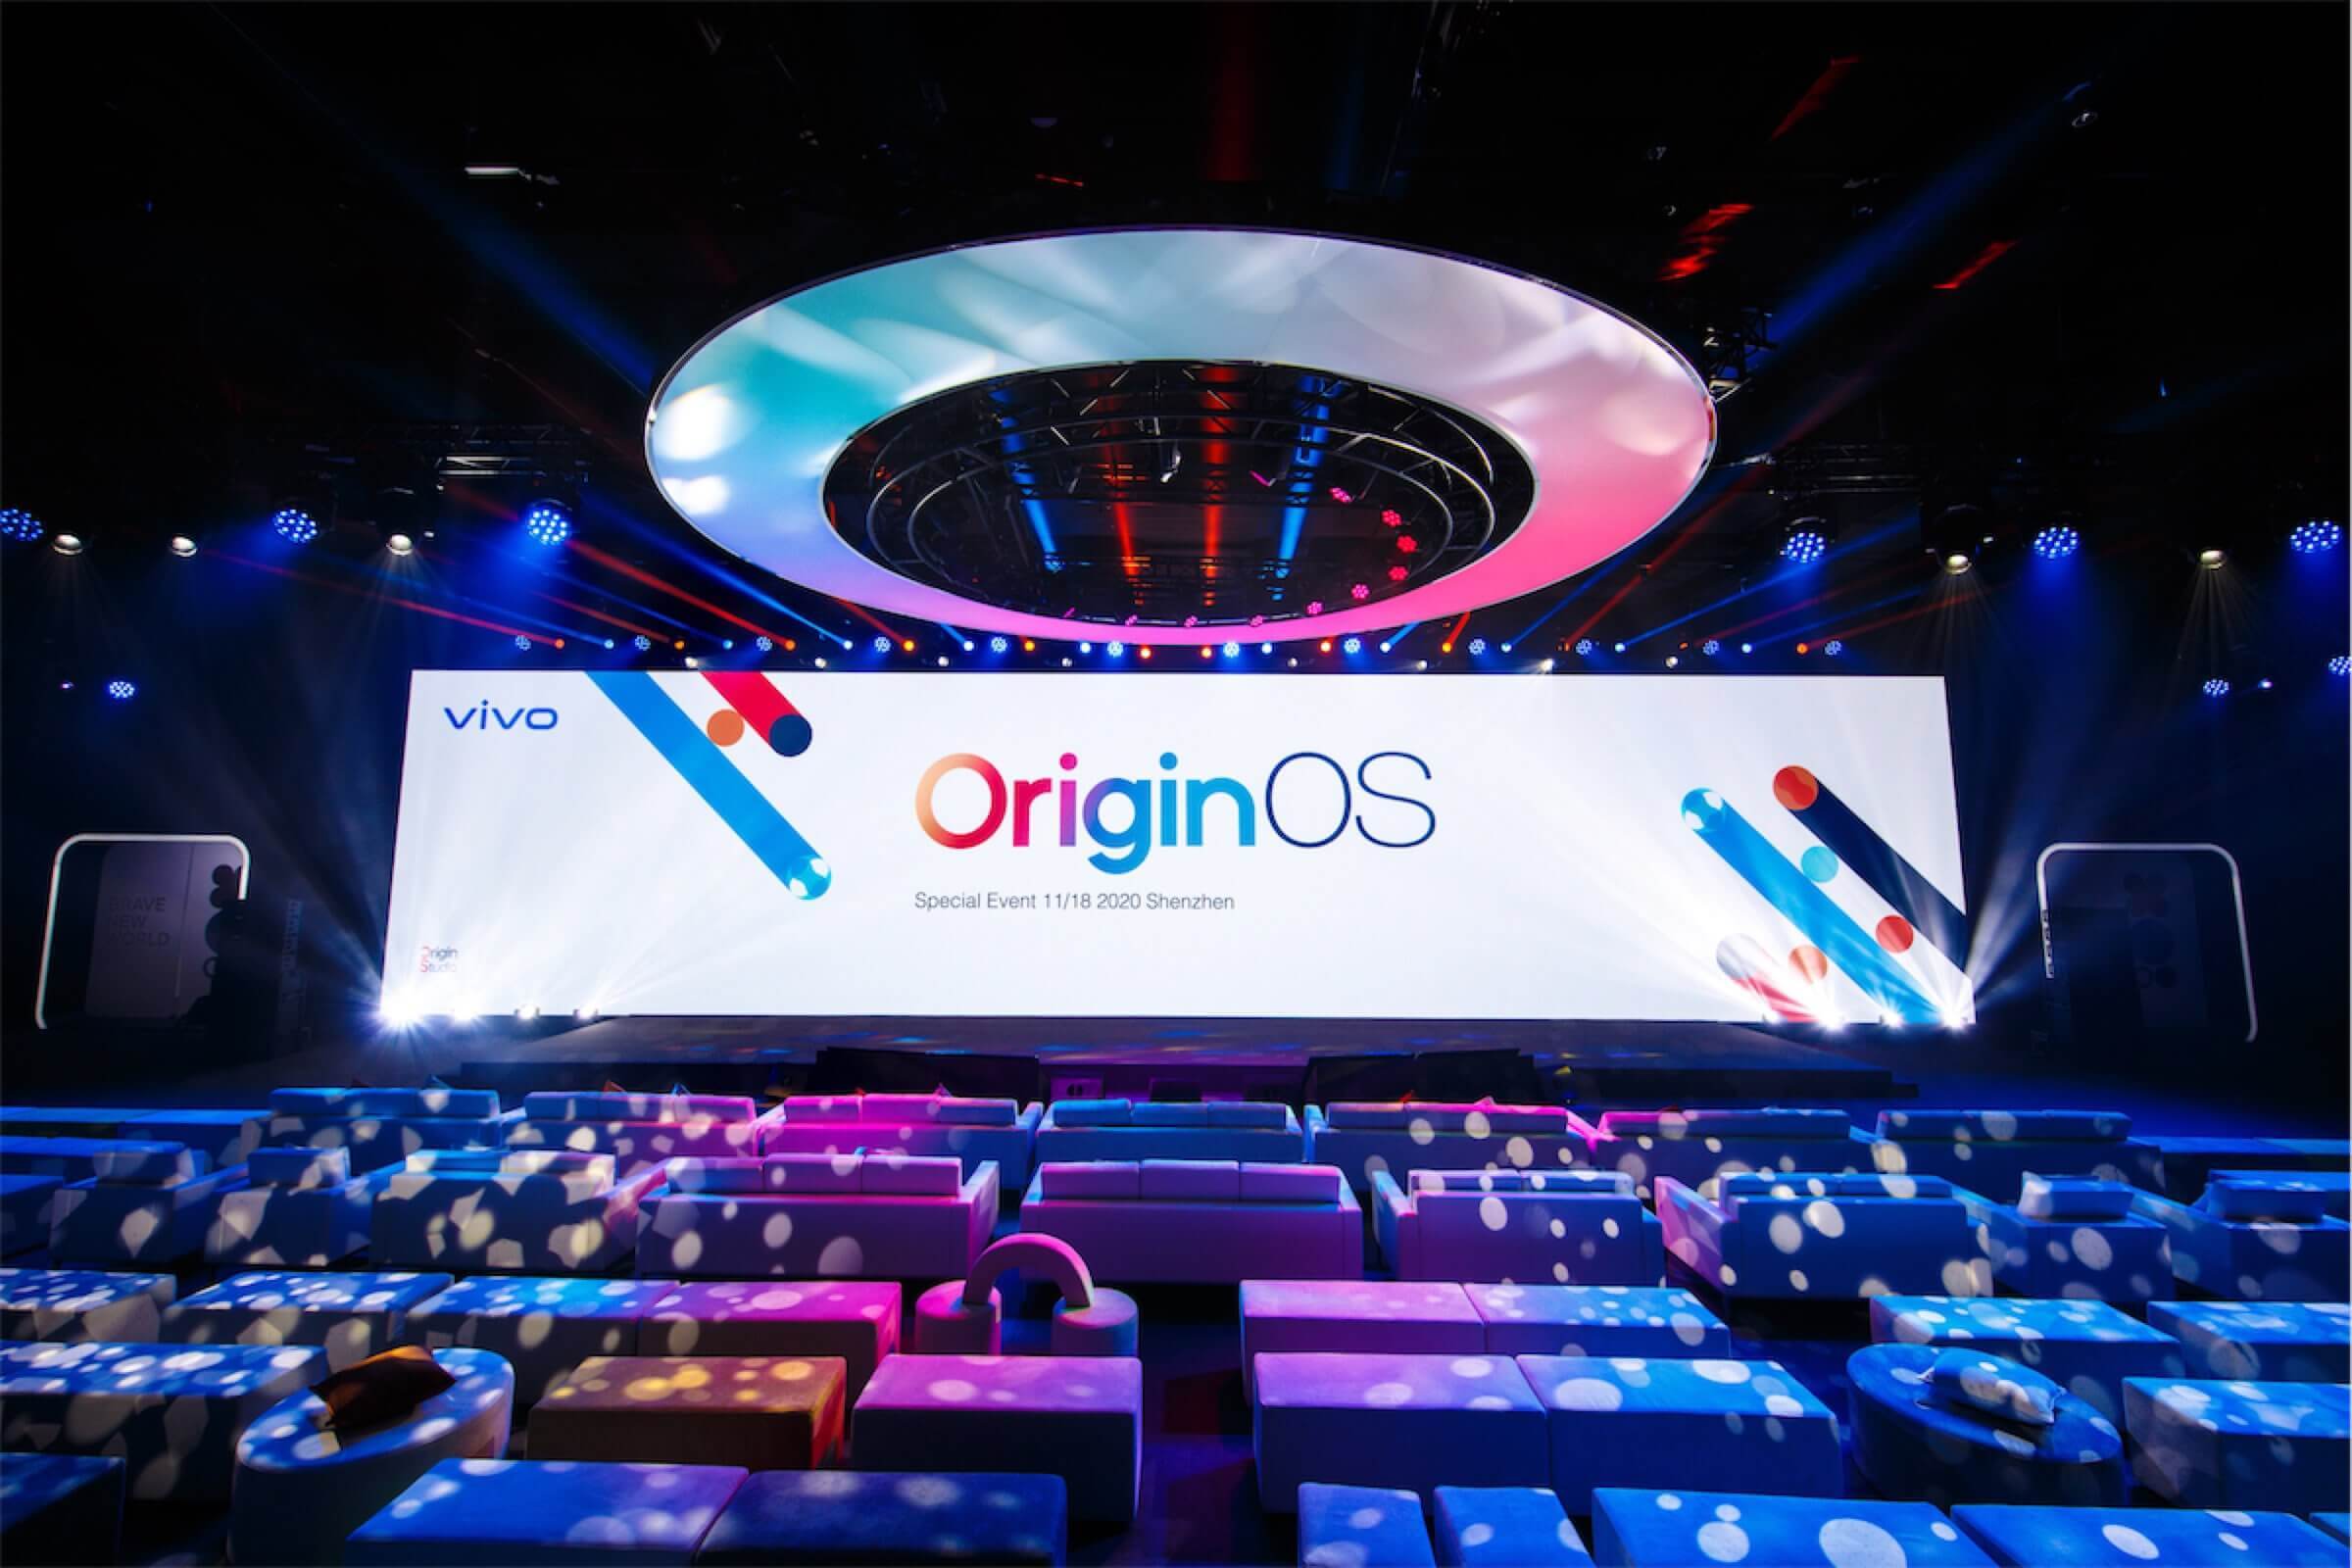 OriginOS je kompletně přepracovaný systém od Vivo